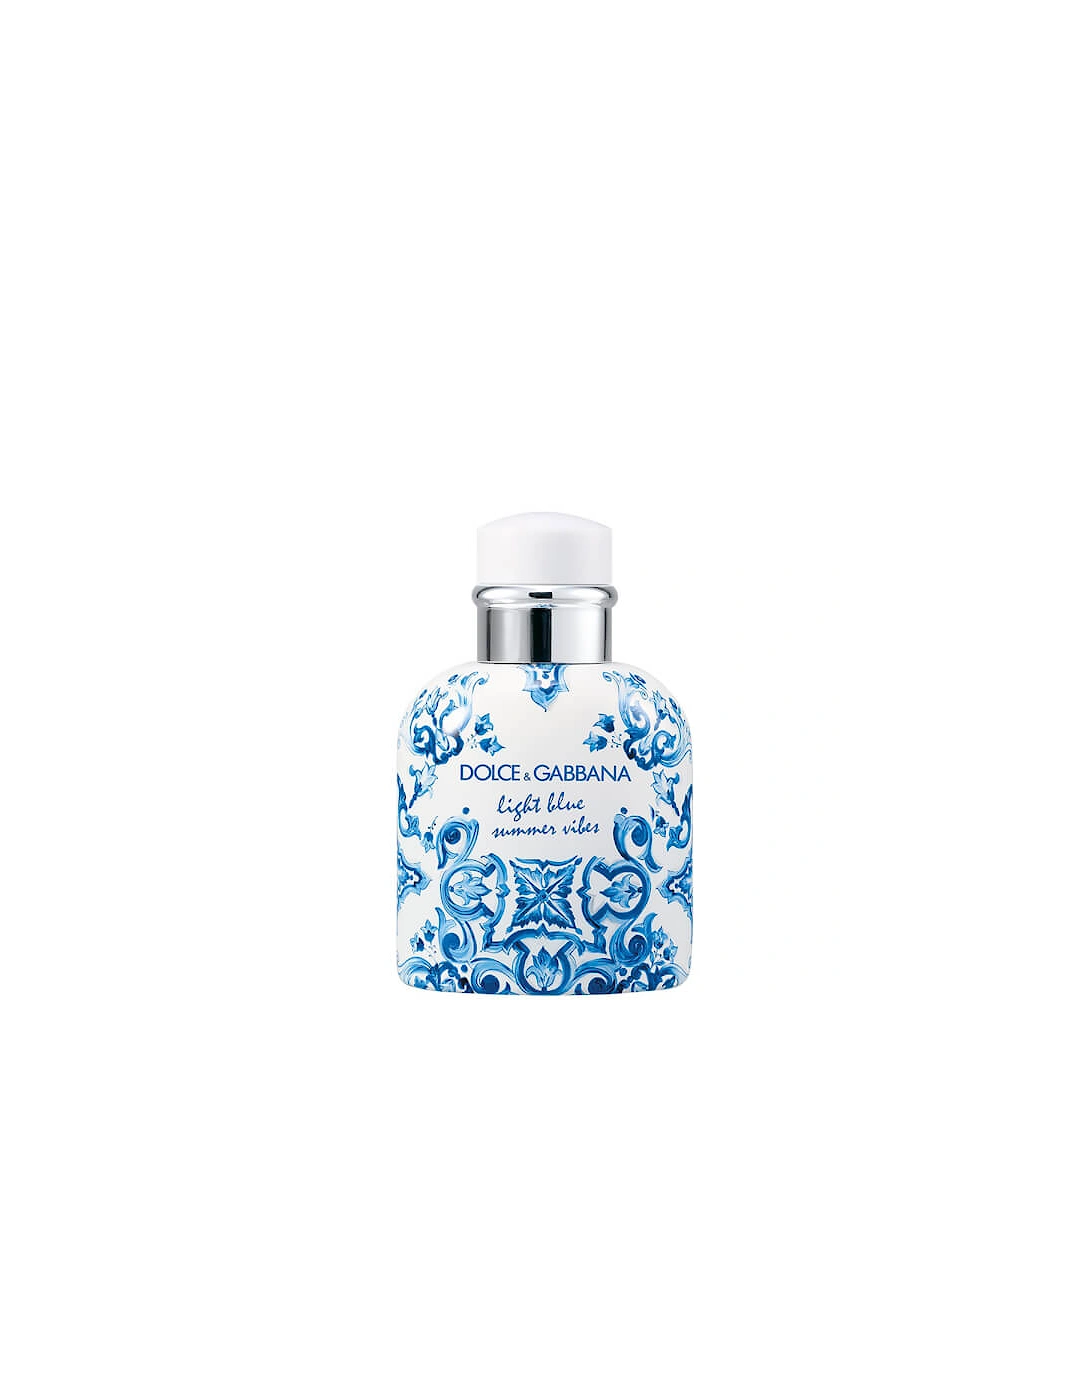 Dolce&Gabbana Light Blue Summer Vibes Pour Homme Eau de Toilette 75ml, 2 of 1